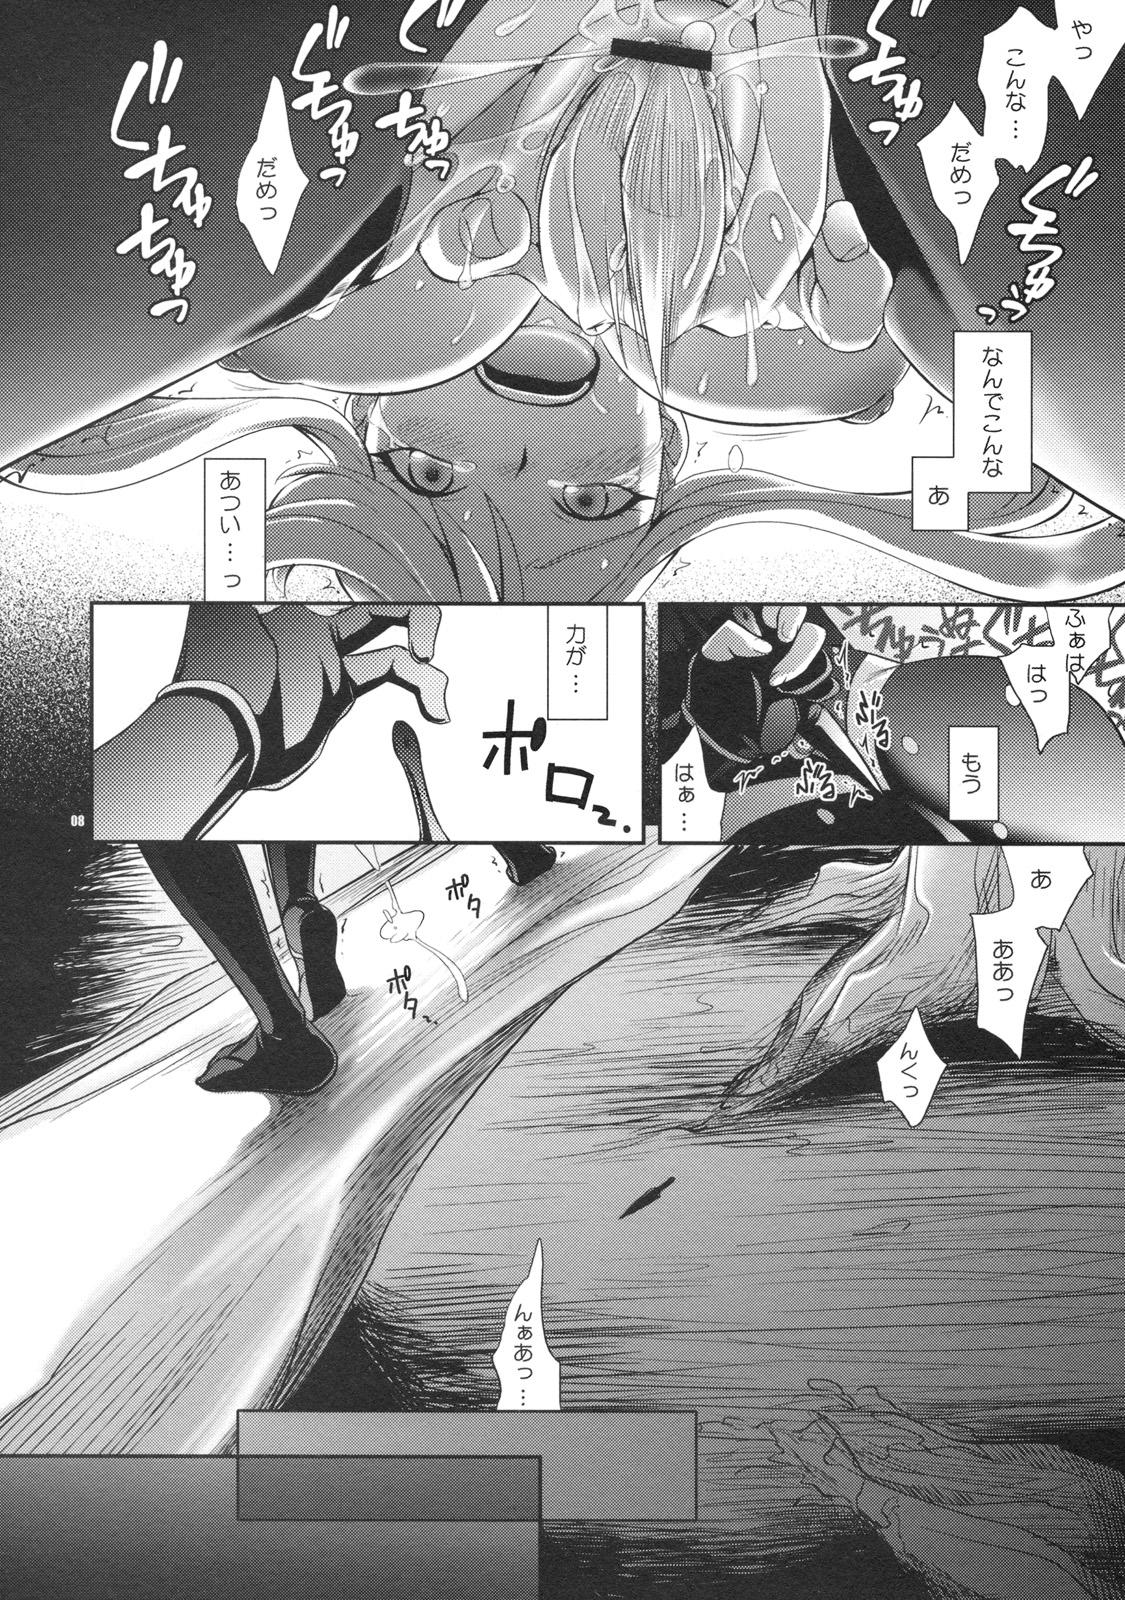 Women Oosame Kudasai Kenshin-sama! - Sengoku basara Classroom - Page 7